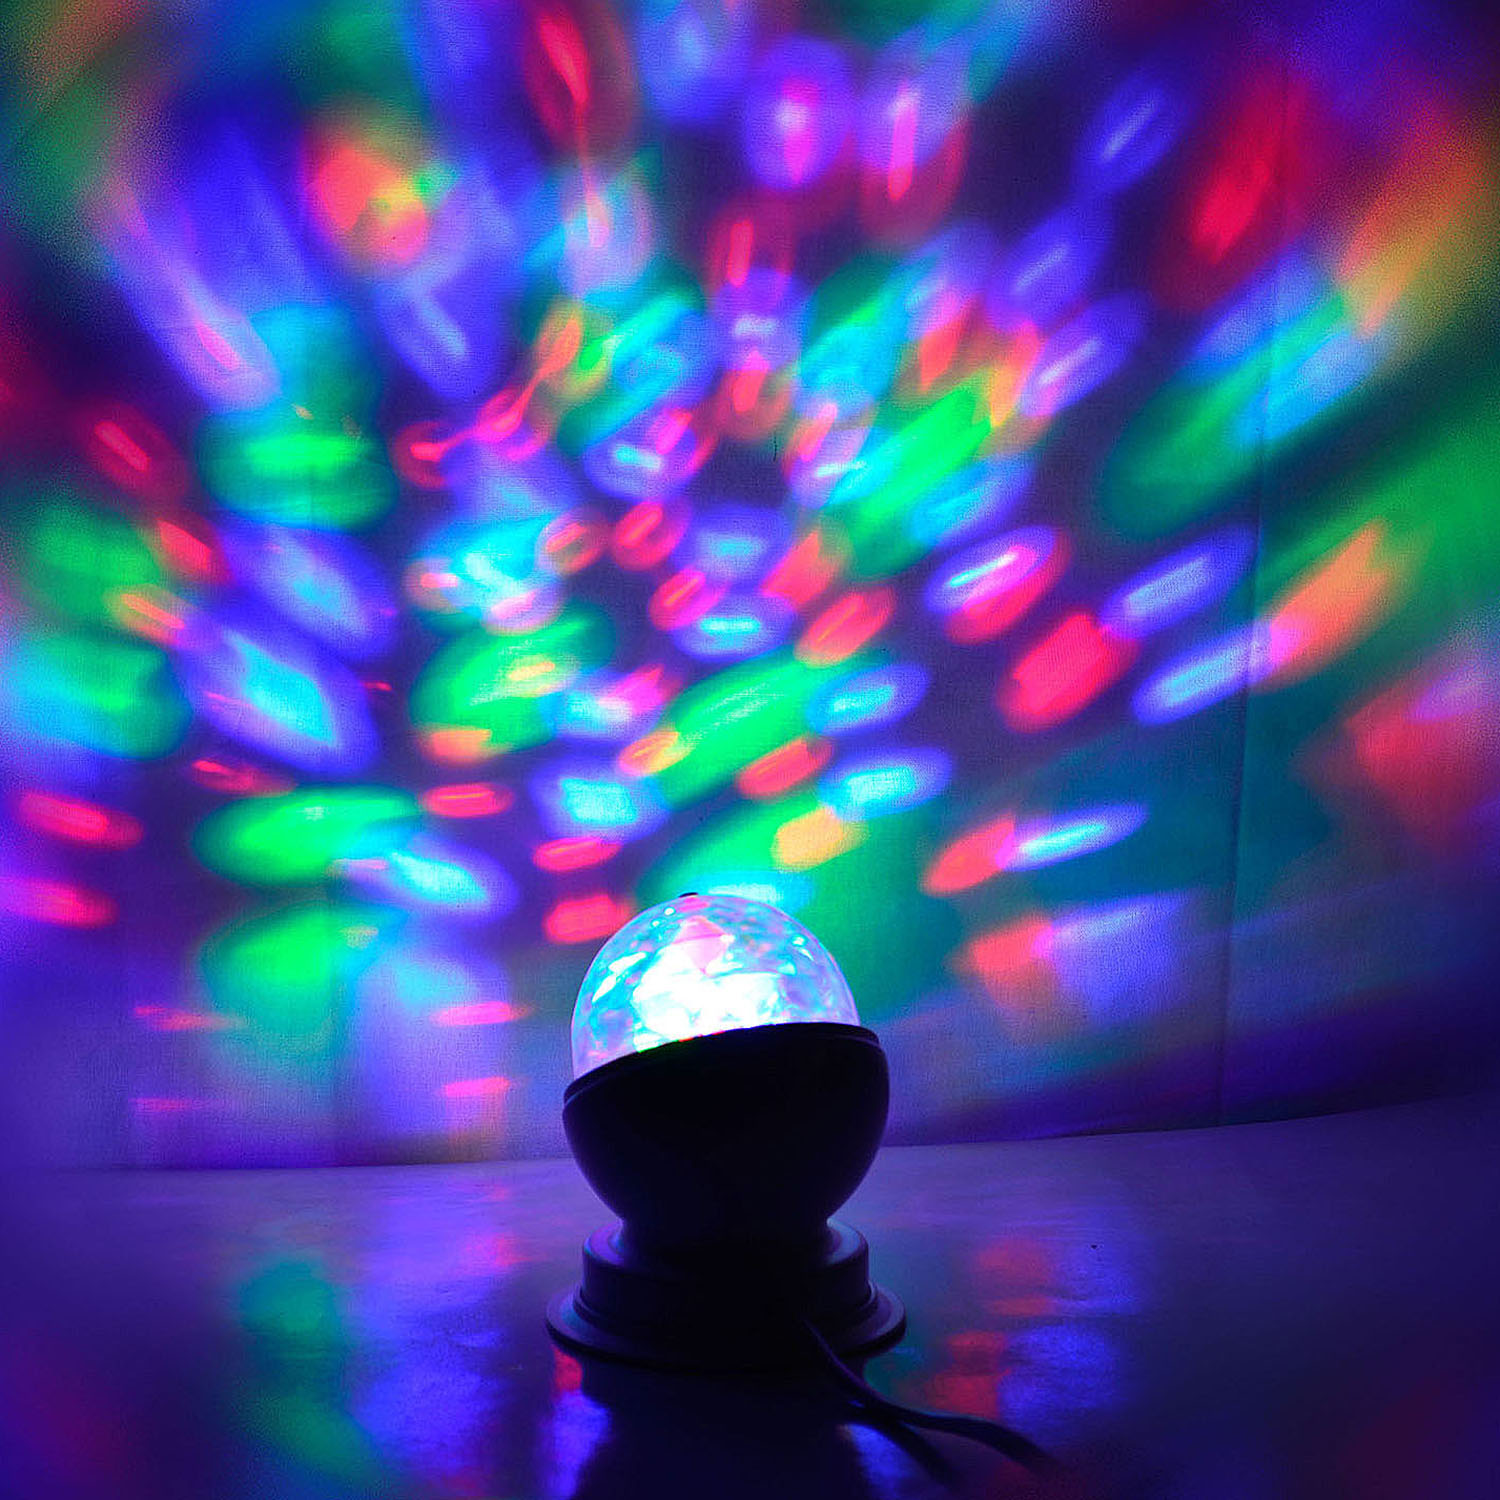 X4-LIFE LED Partyleuchte RGB rotierend, Lichteffekt, 3 Watt, 10.5 cm